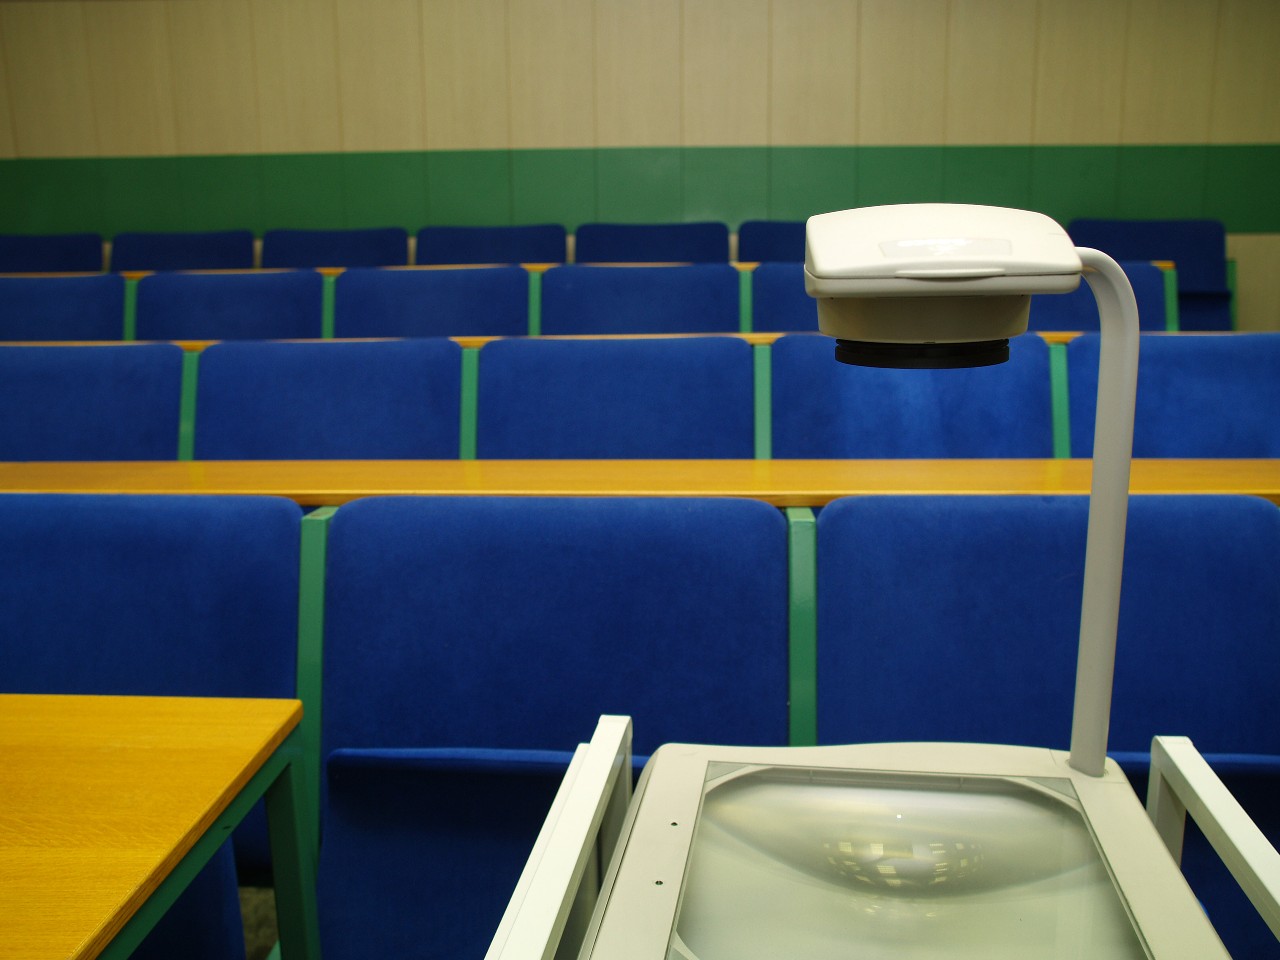 Empty seminar rooms: